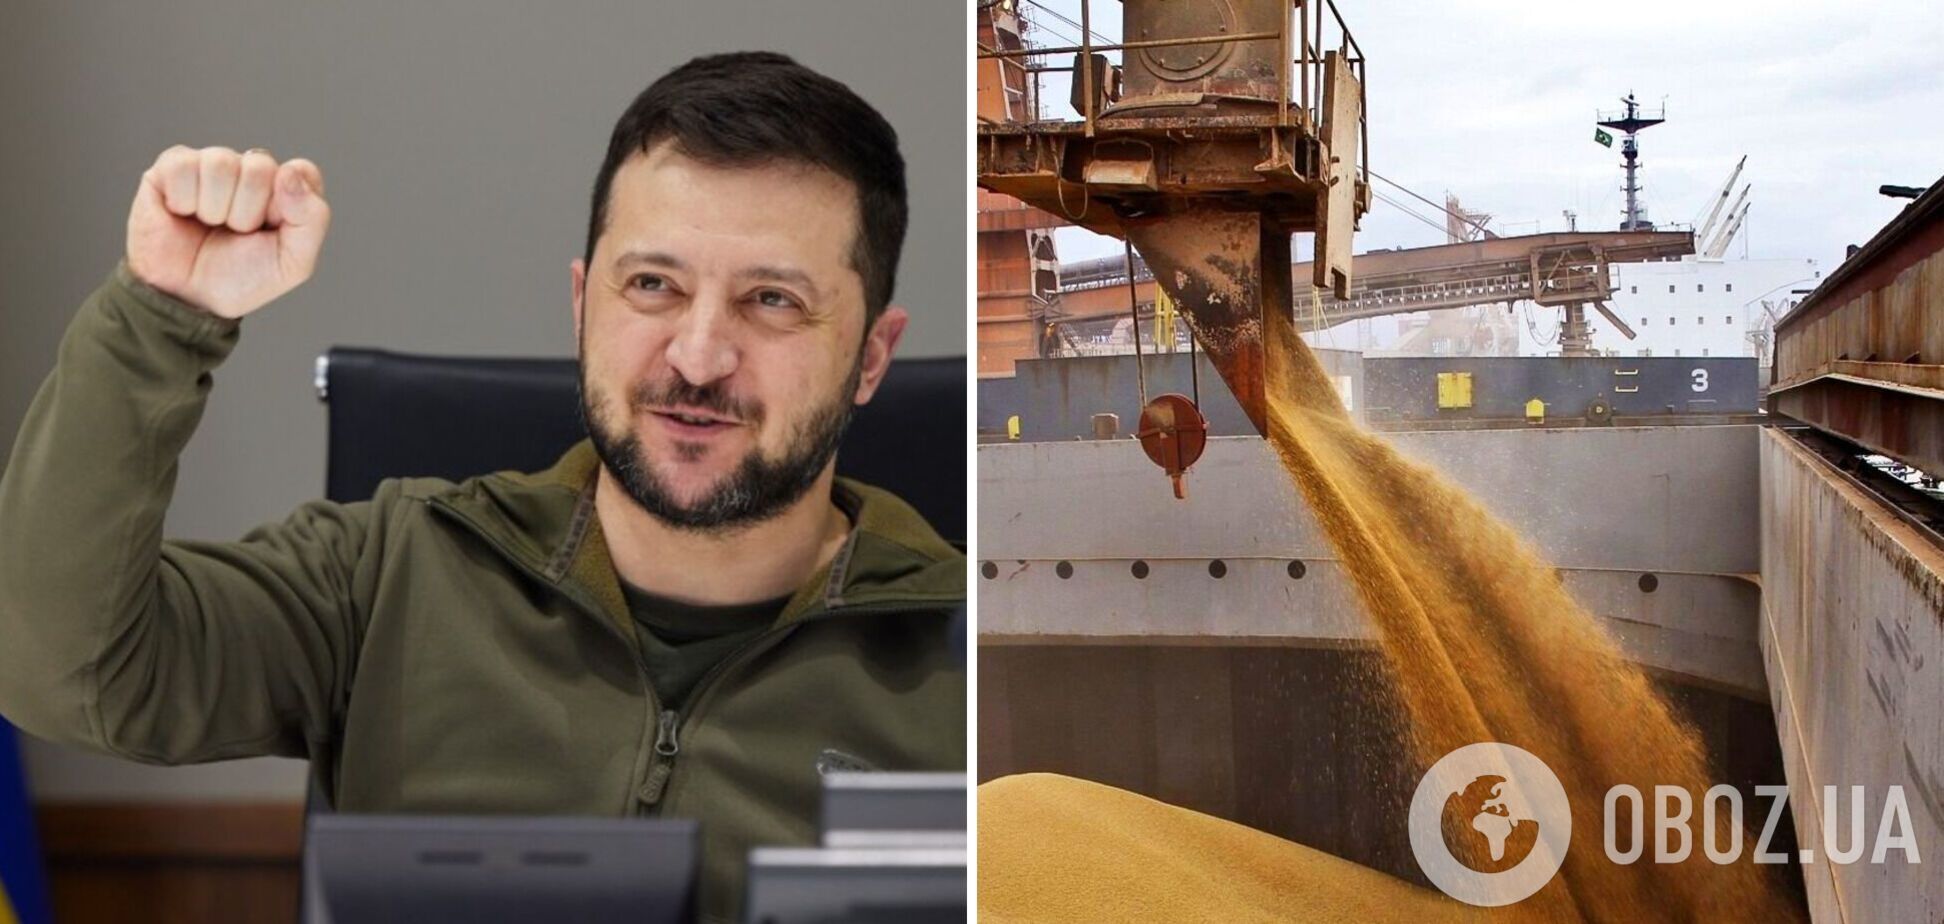 Україна вже експортувала мільйон тонн зерна і показала, що залишається одним із гарантів світової продовольчої безпеки, – Зеленський